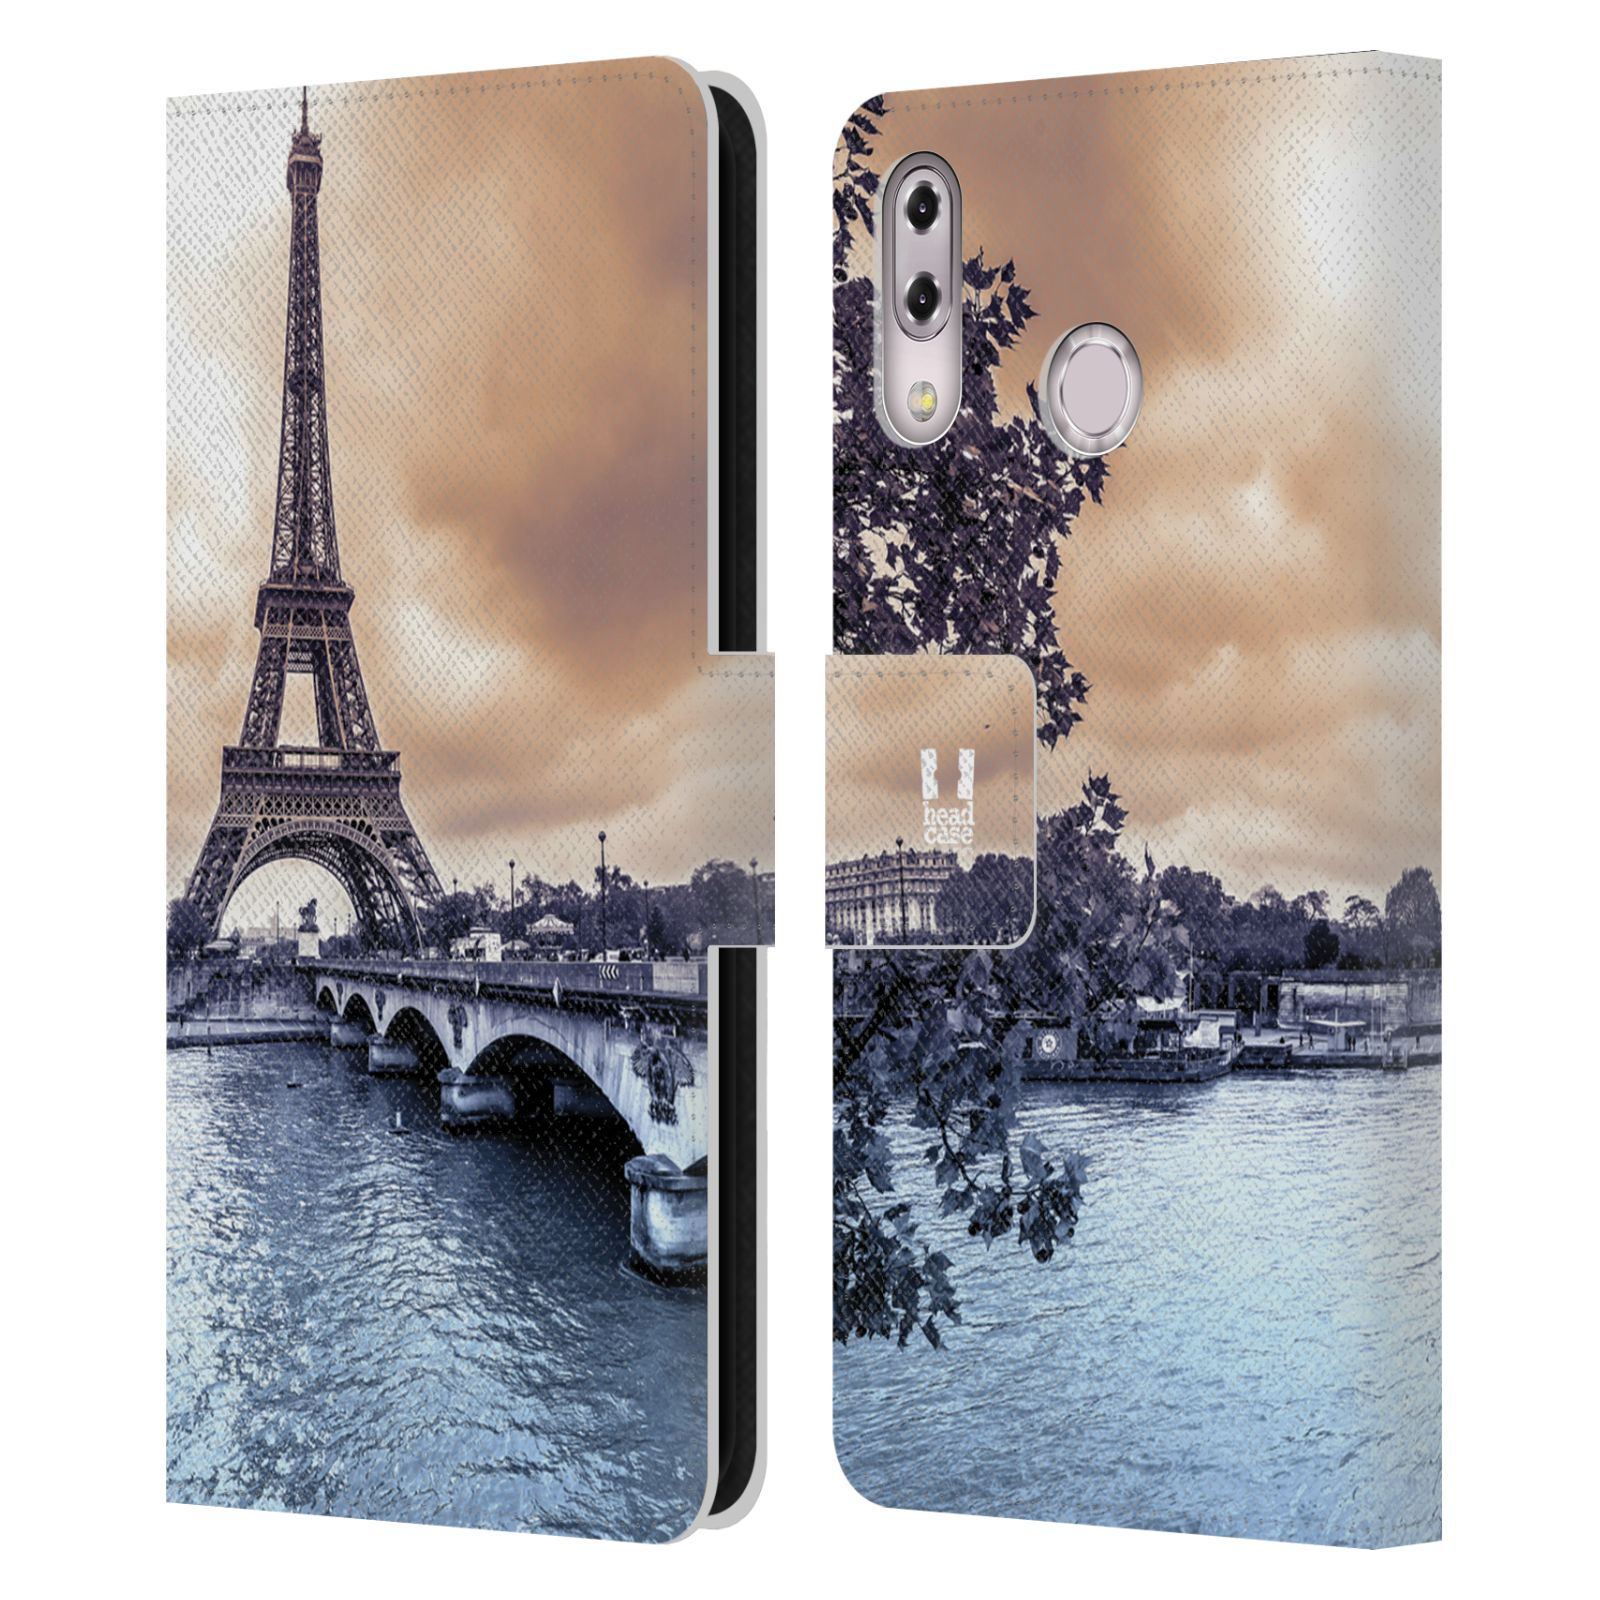 Pouzdro pro mobil Asus Zenfone 5z ZS620KL, 5 ZE620KL  - Eiffelova věž Paříž - Francie